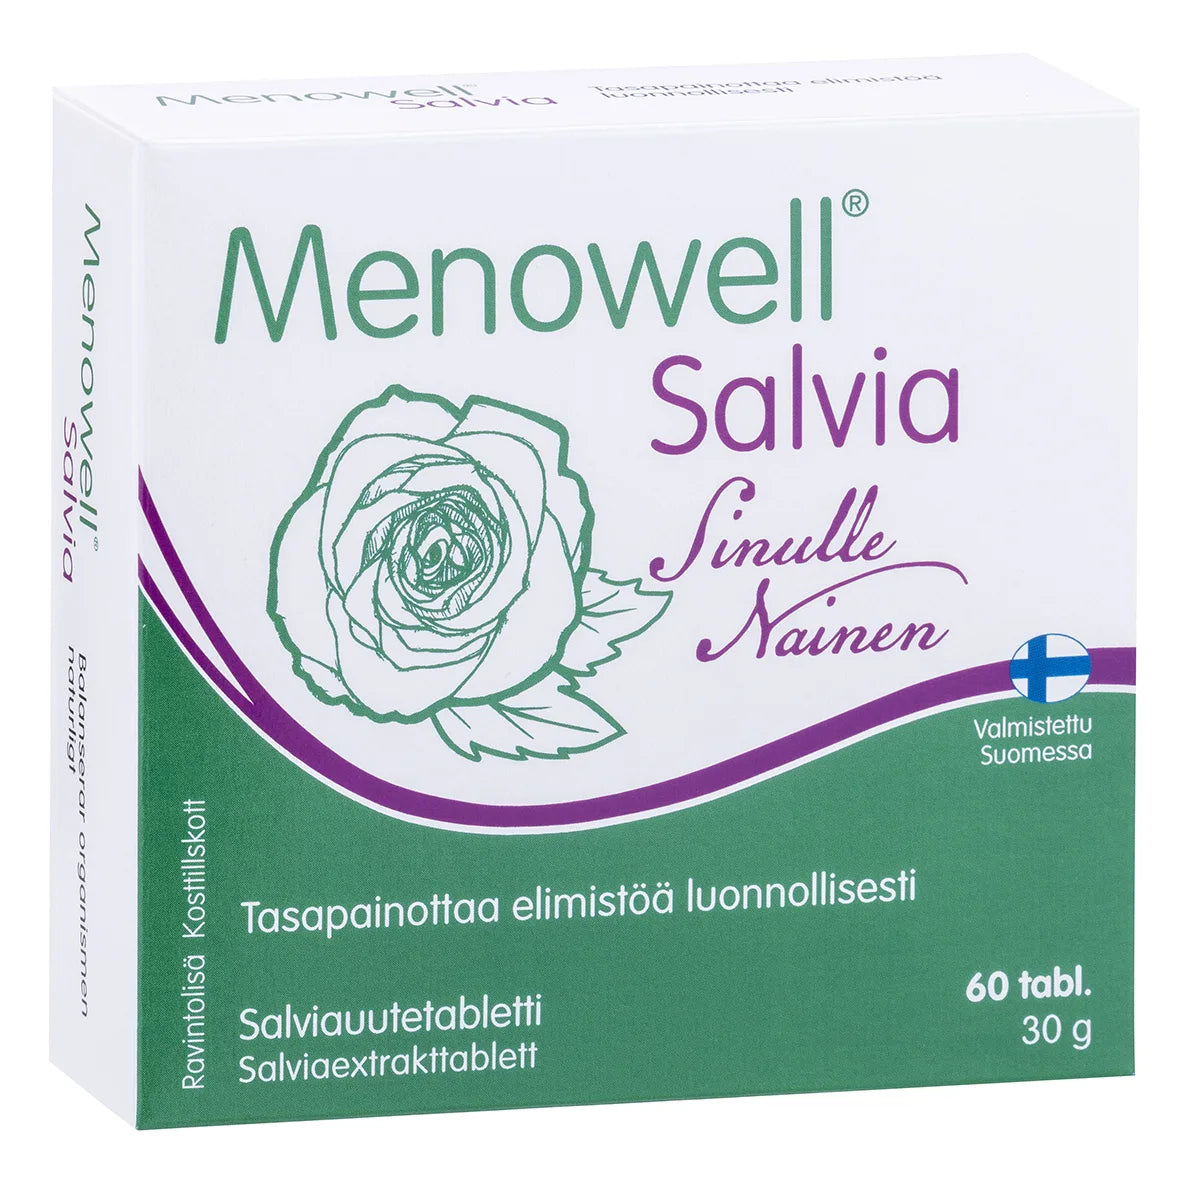 MENOWELL Salvia tabletti 60 kpl ravintolisä naisille tasapainottaa elimistöä luonnollisesti